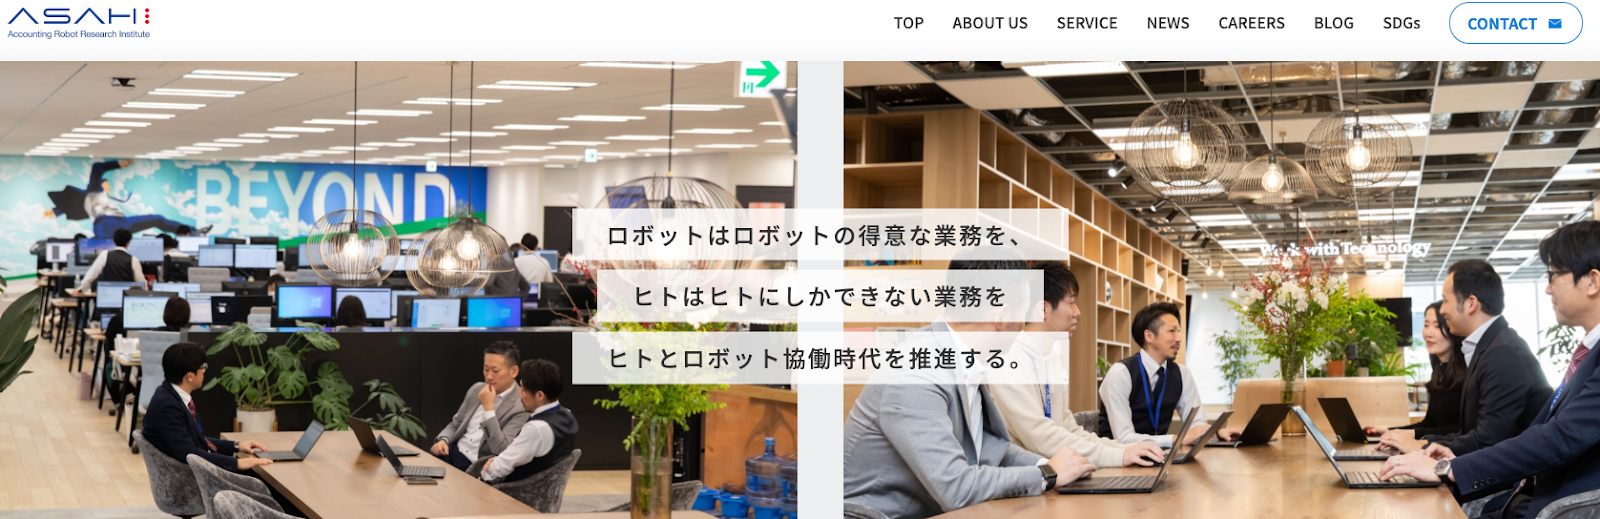 株式会社ASAHI Accounting Robot研究所【情報通信業】